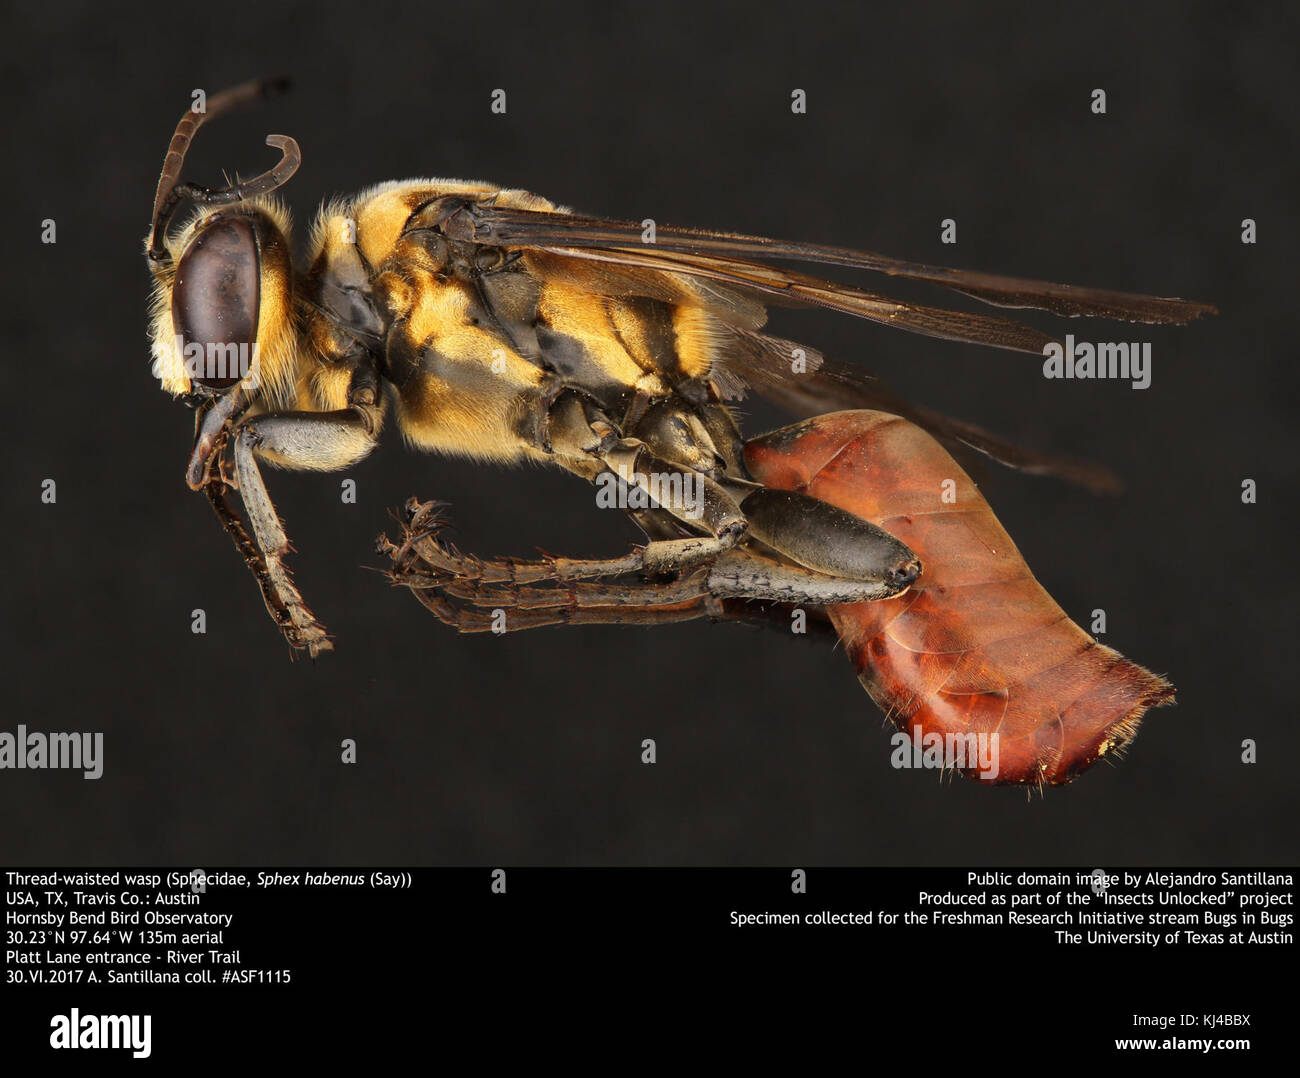 Thread-cintata wasp (Sphecidae, Sphex habenus (dire)) (36255665806) Foto Stock